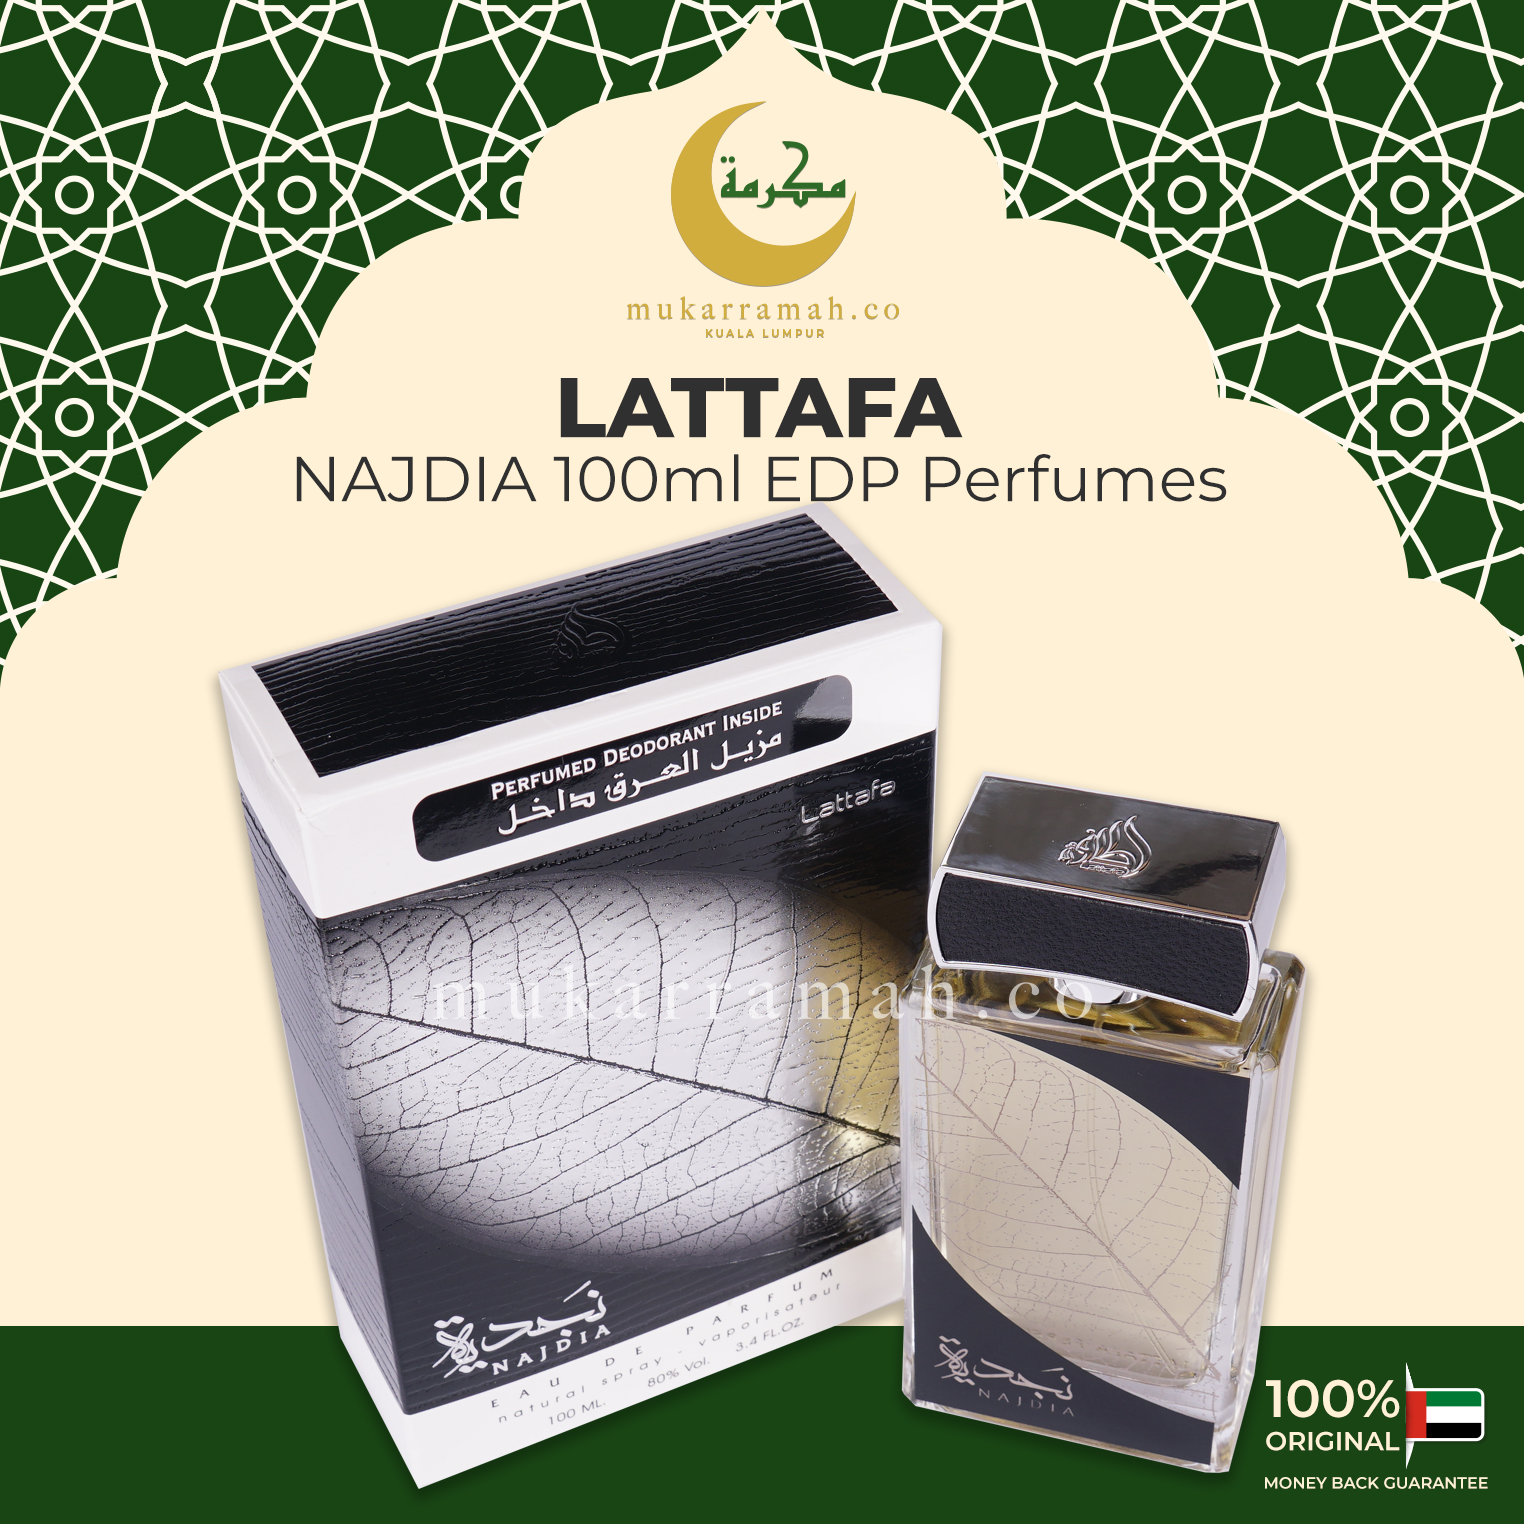 Najdia EDP Perfume by Lattafa